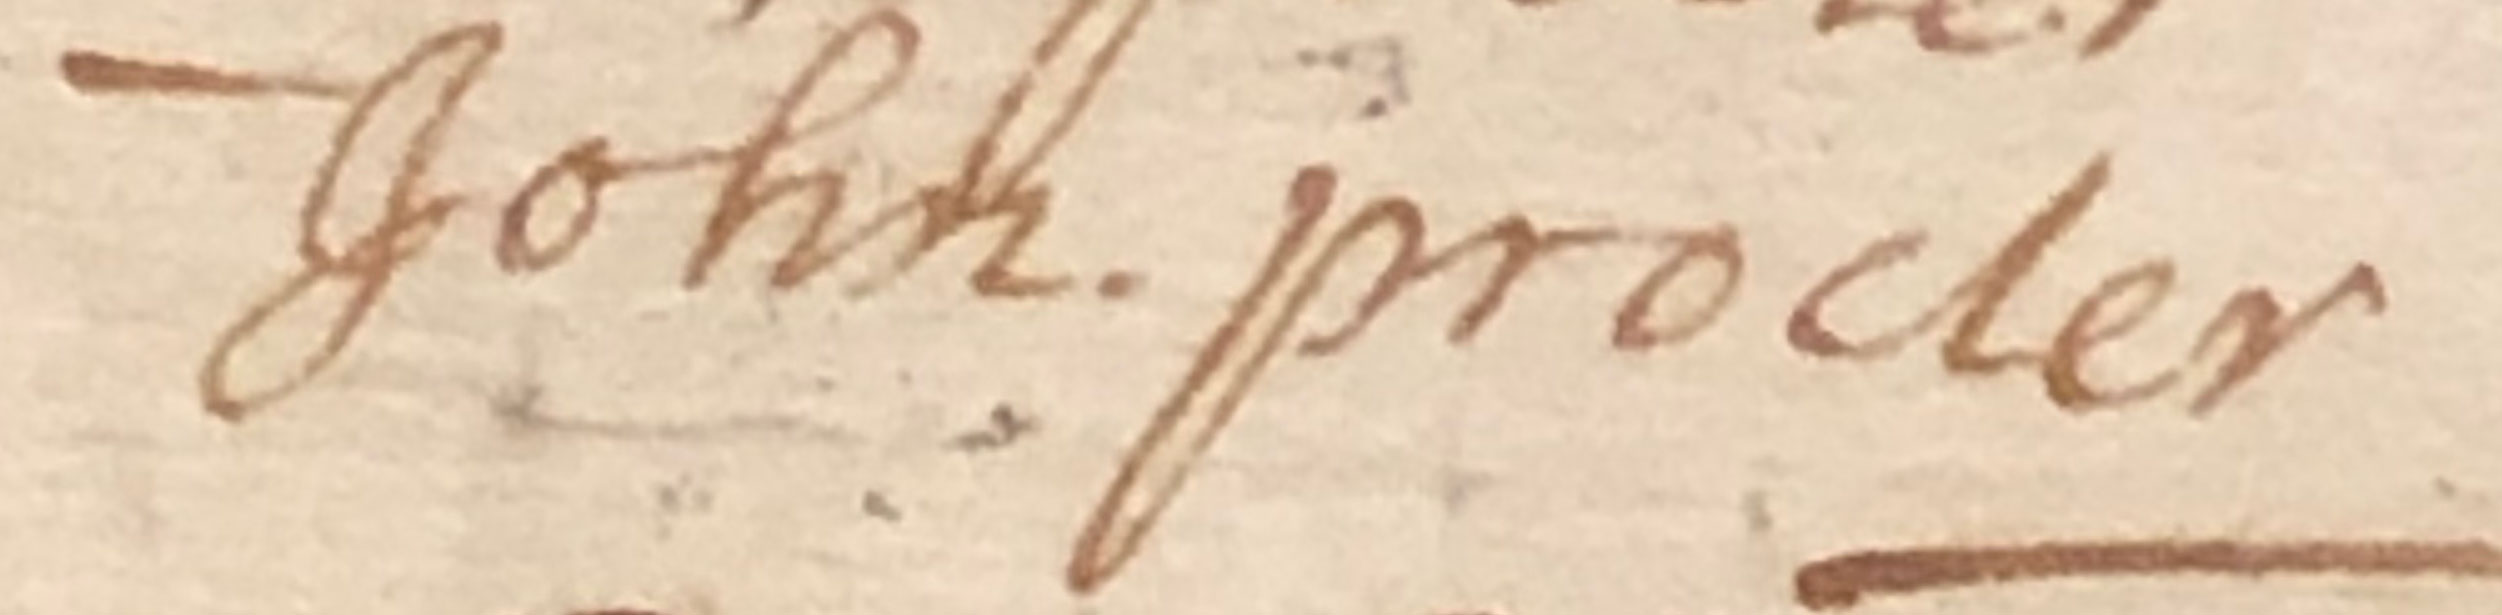 picture of john proctors name taken from ledger of old Salem jail.